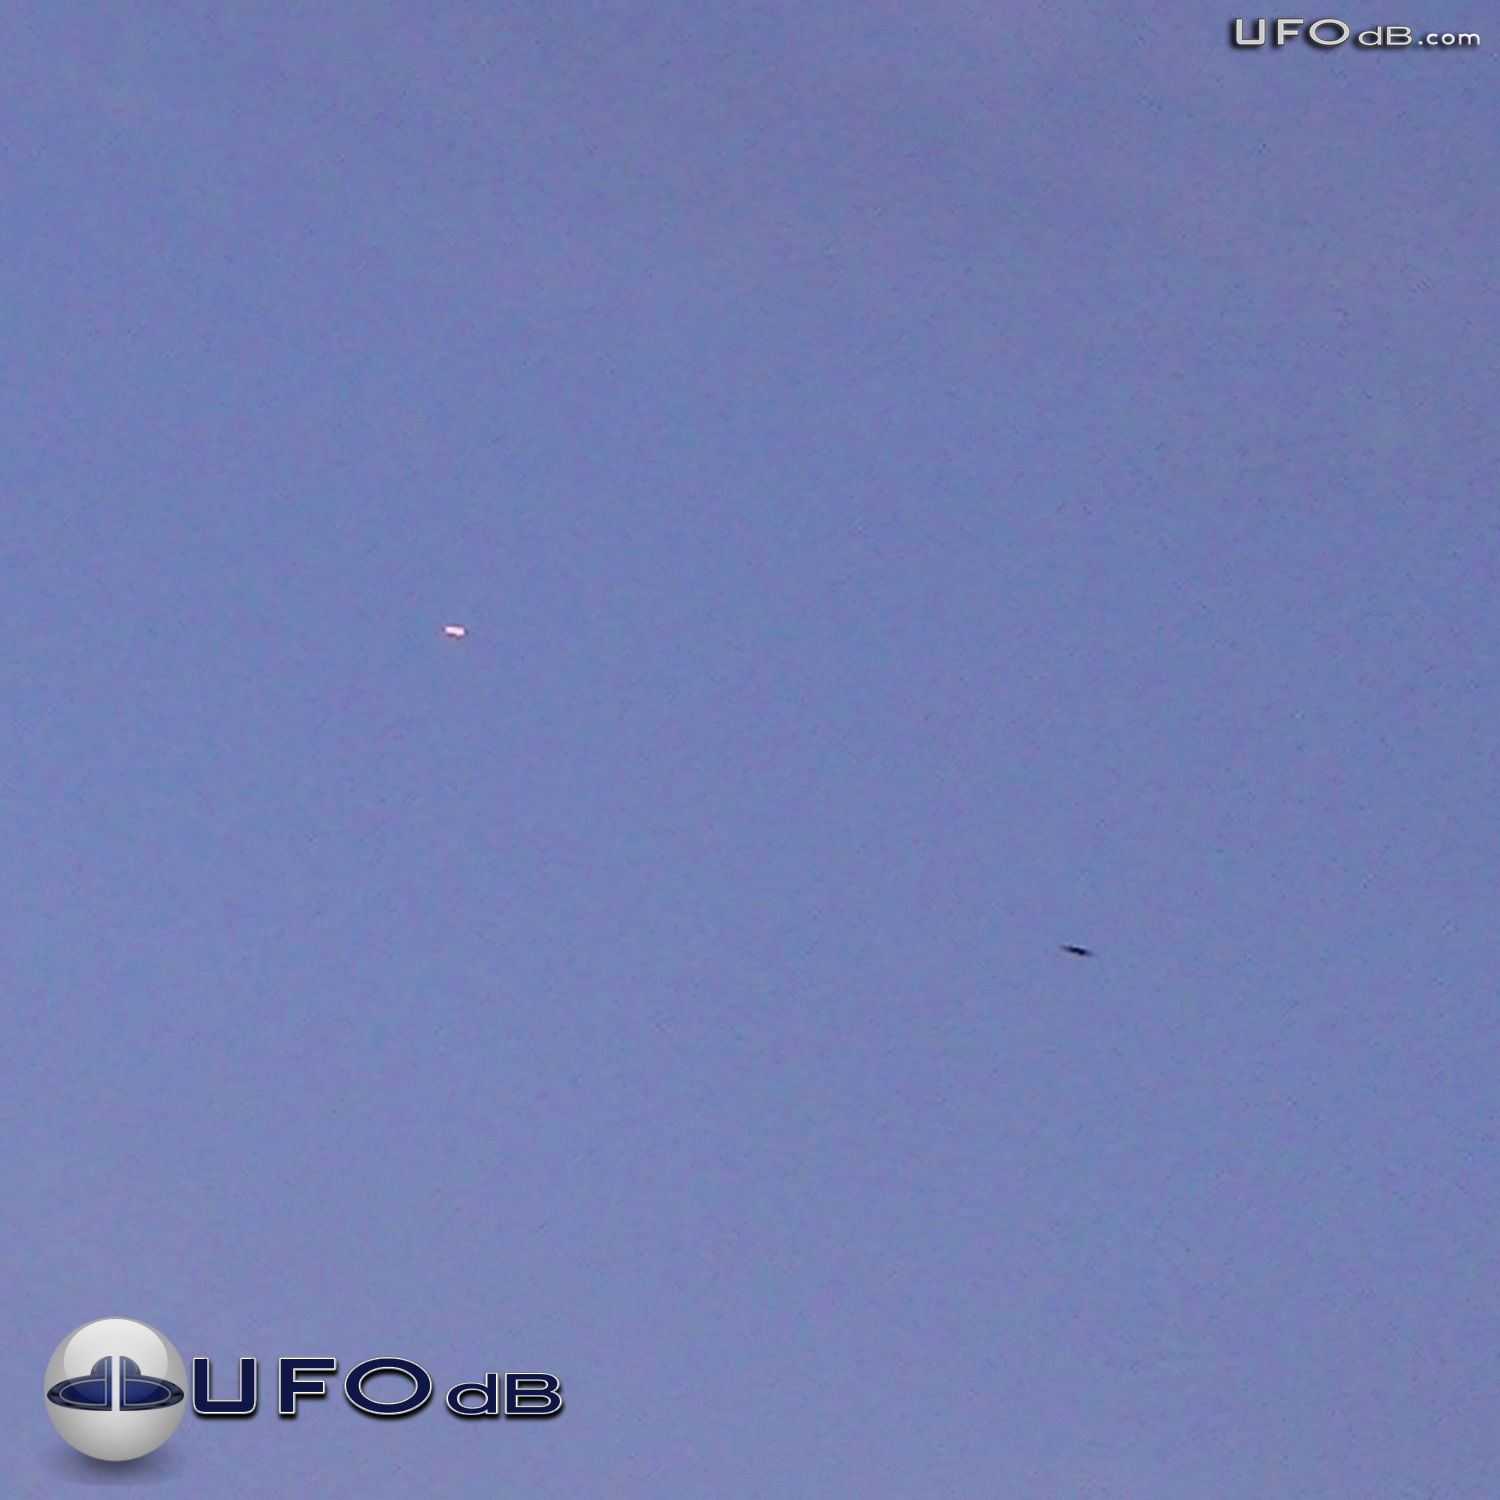 Bright White UFO near Tampa Airport | Florida, USA | February 12 2011 UFO Picture #298-1